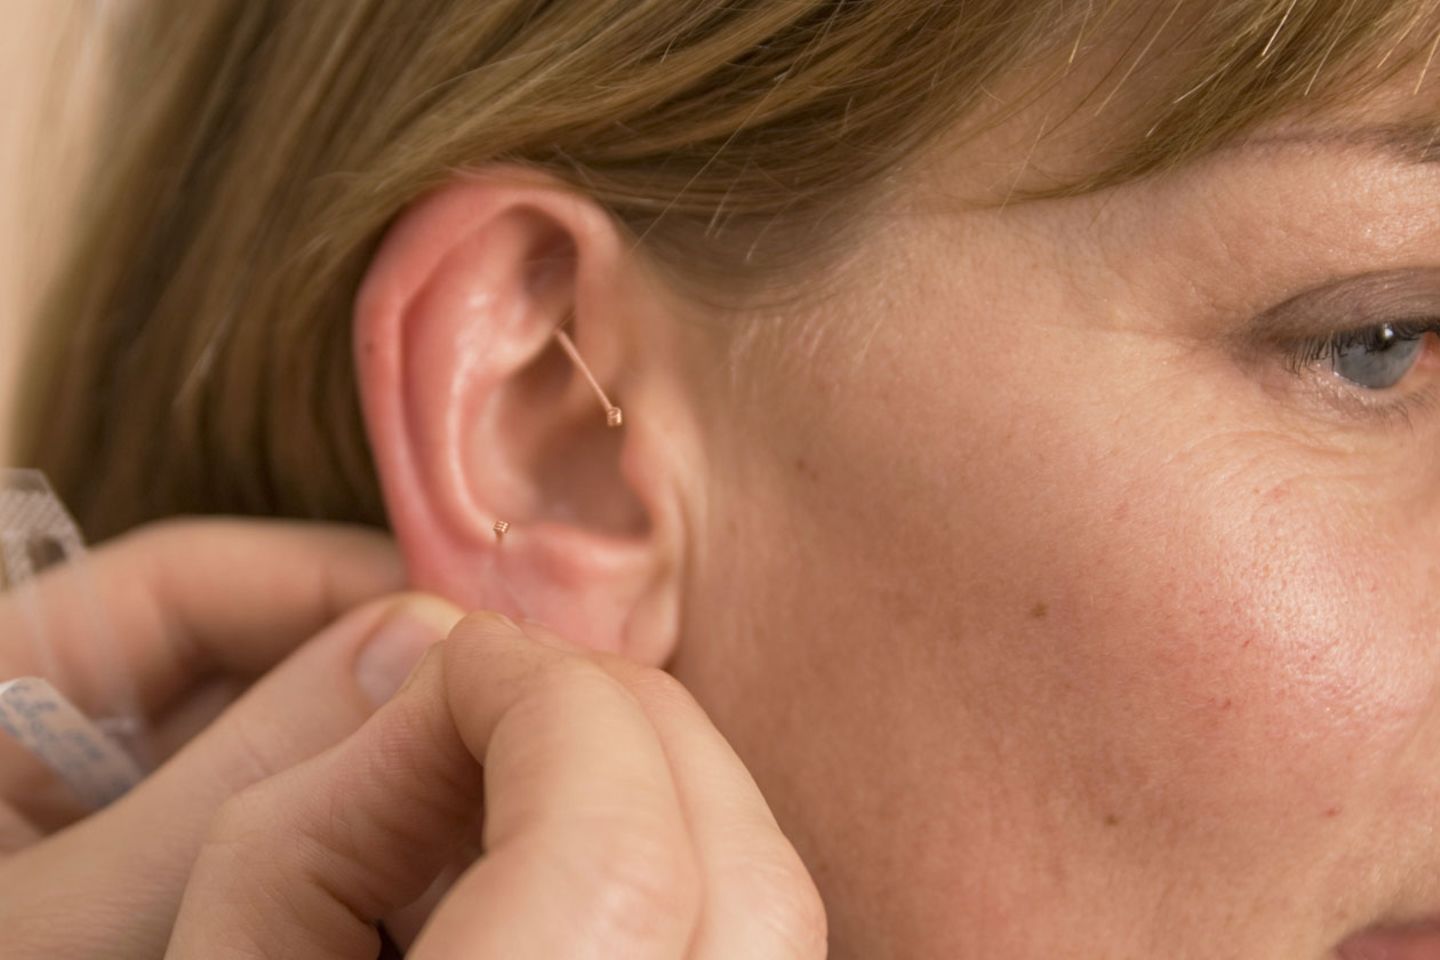 Das Ohr: In der Muschel liegen besonders viele Akupunkturpunkte